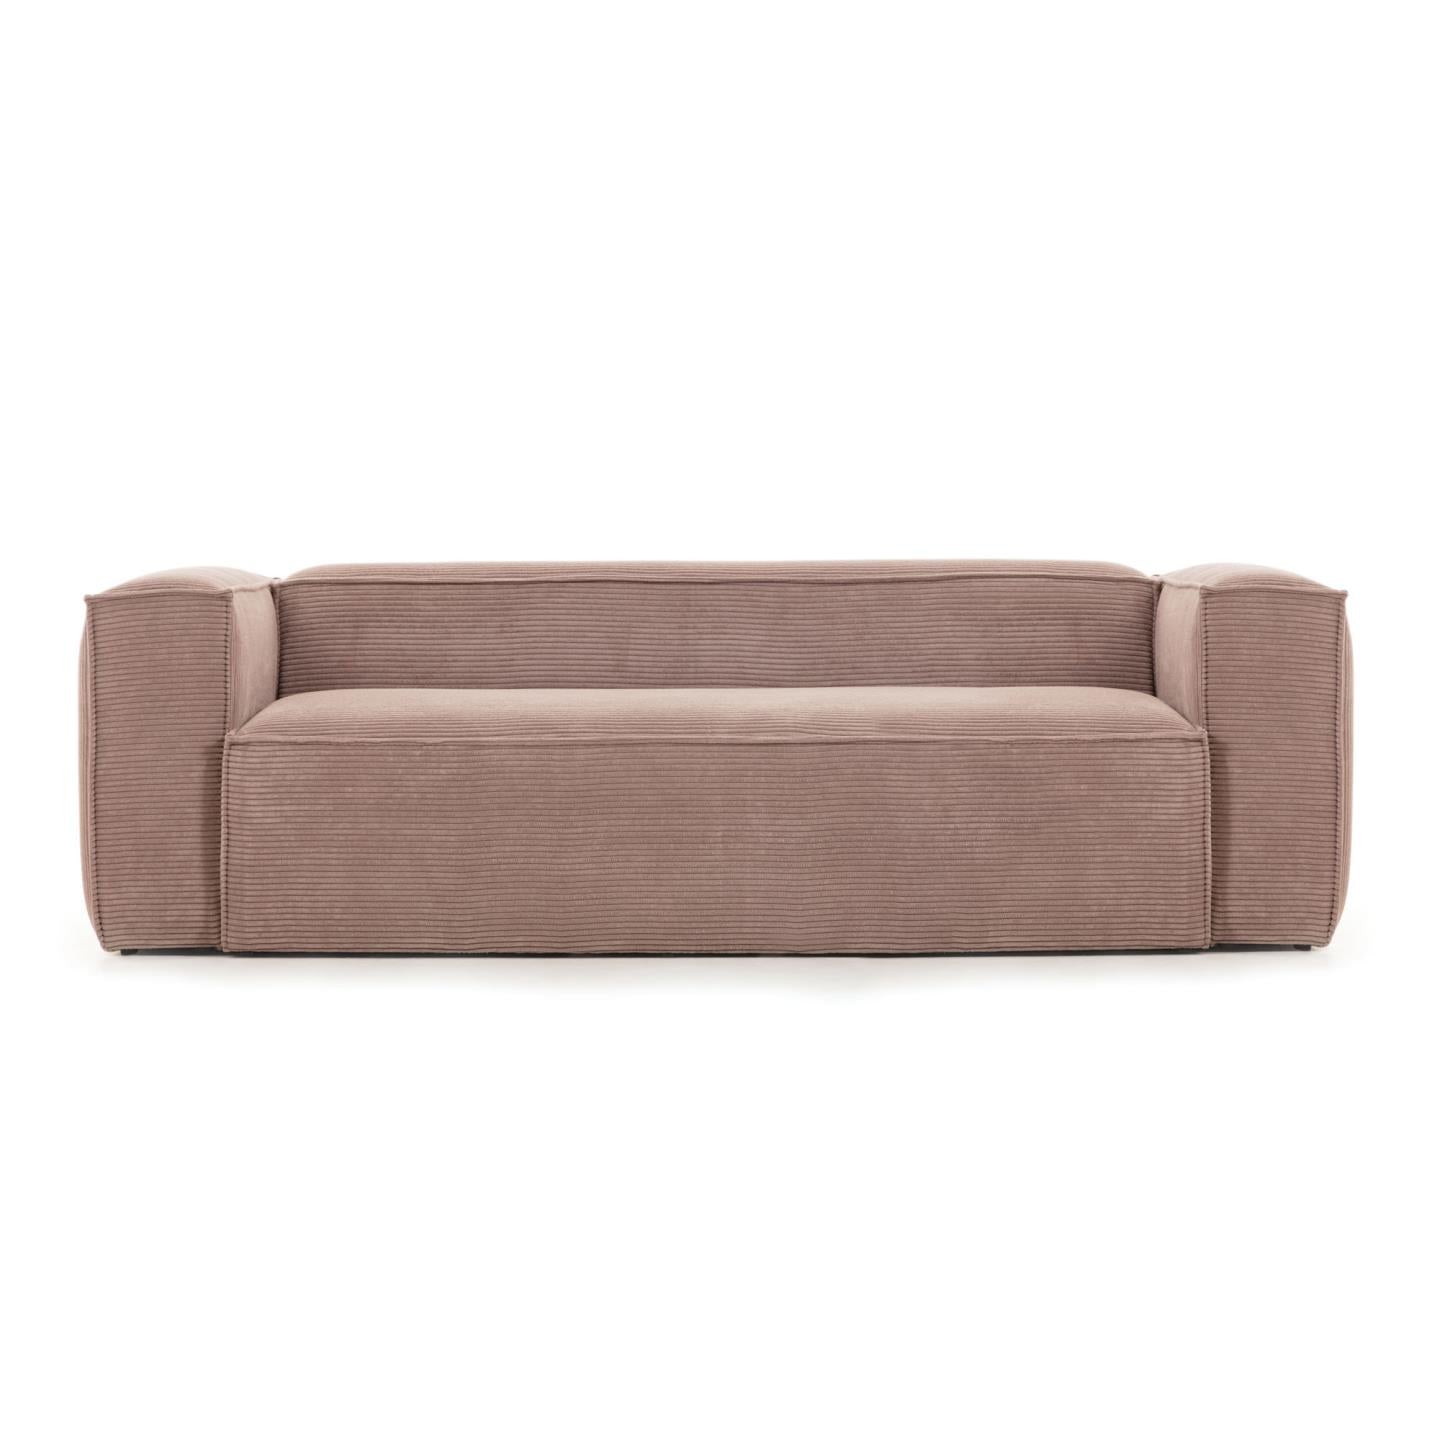 Blok 3 személyes kanapé rózsaszín, széles varrású kordbársonyból, 240 cm